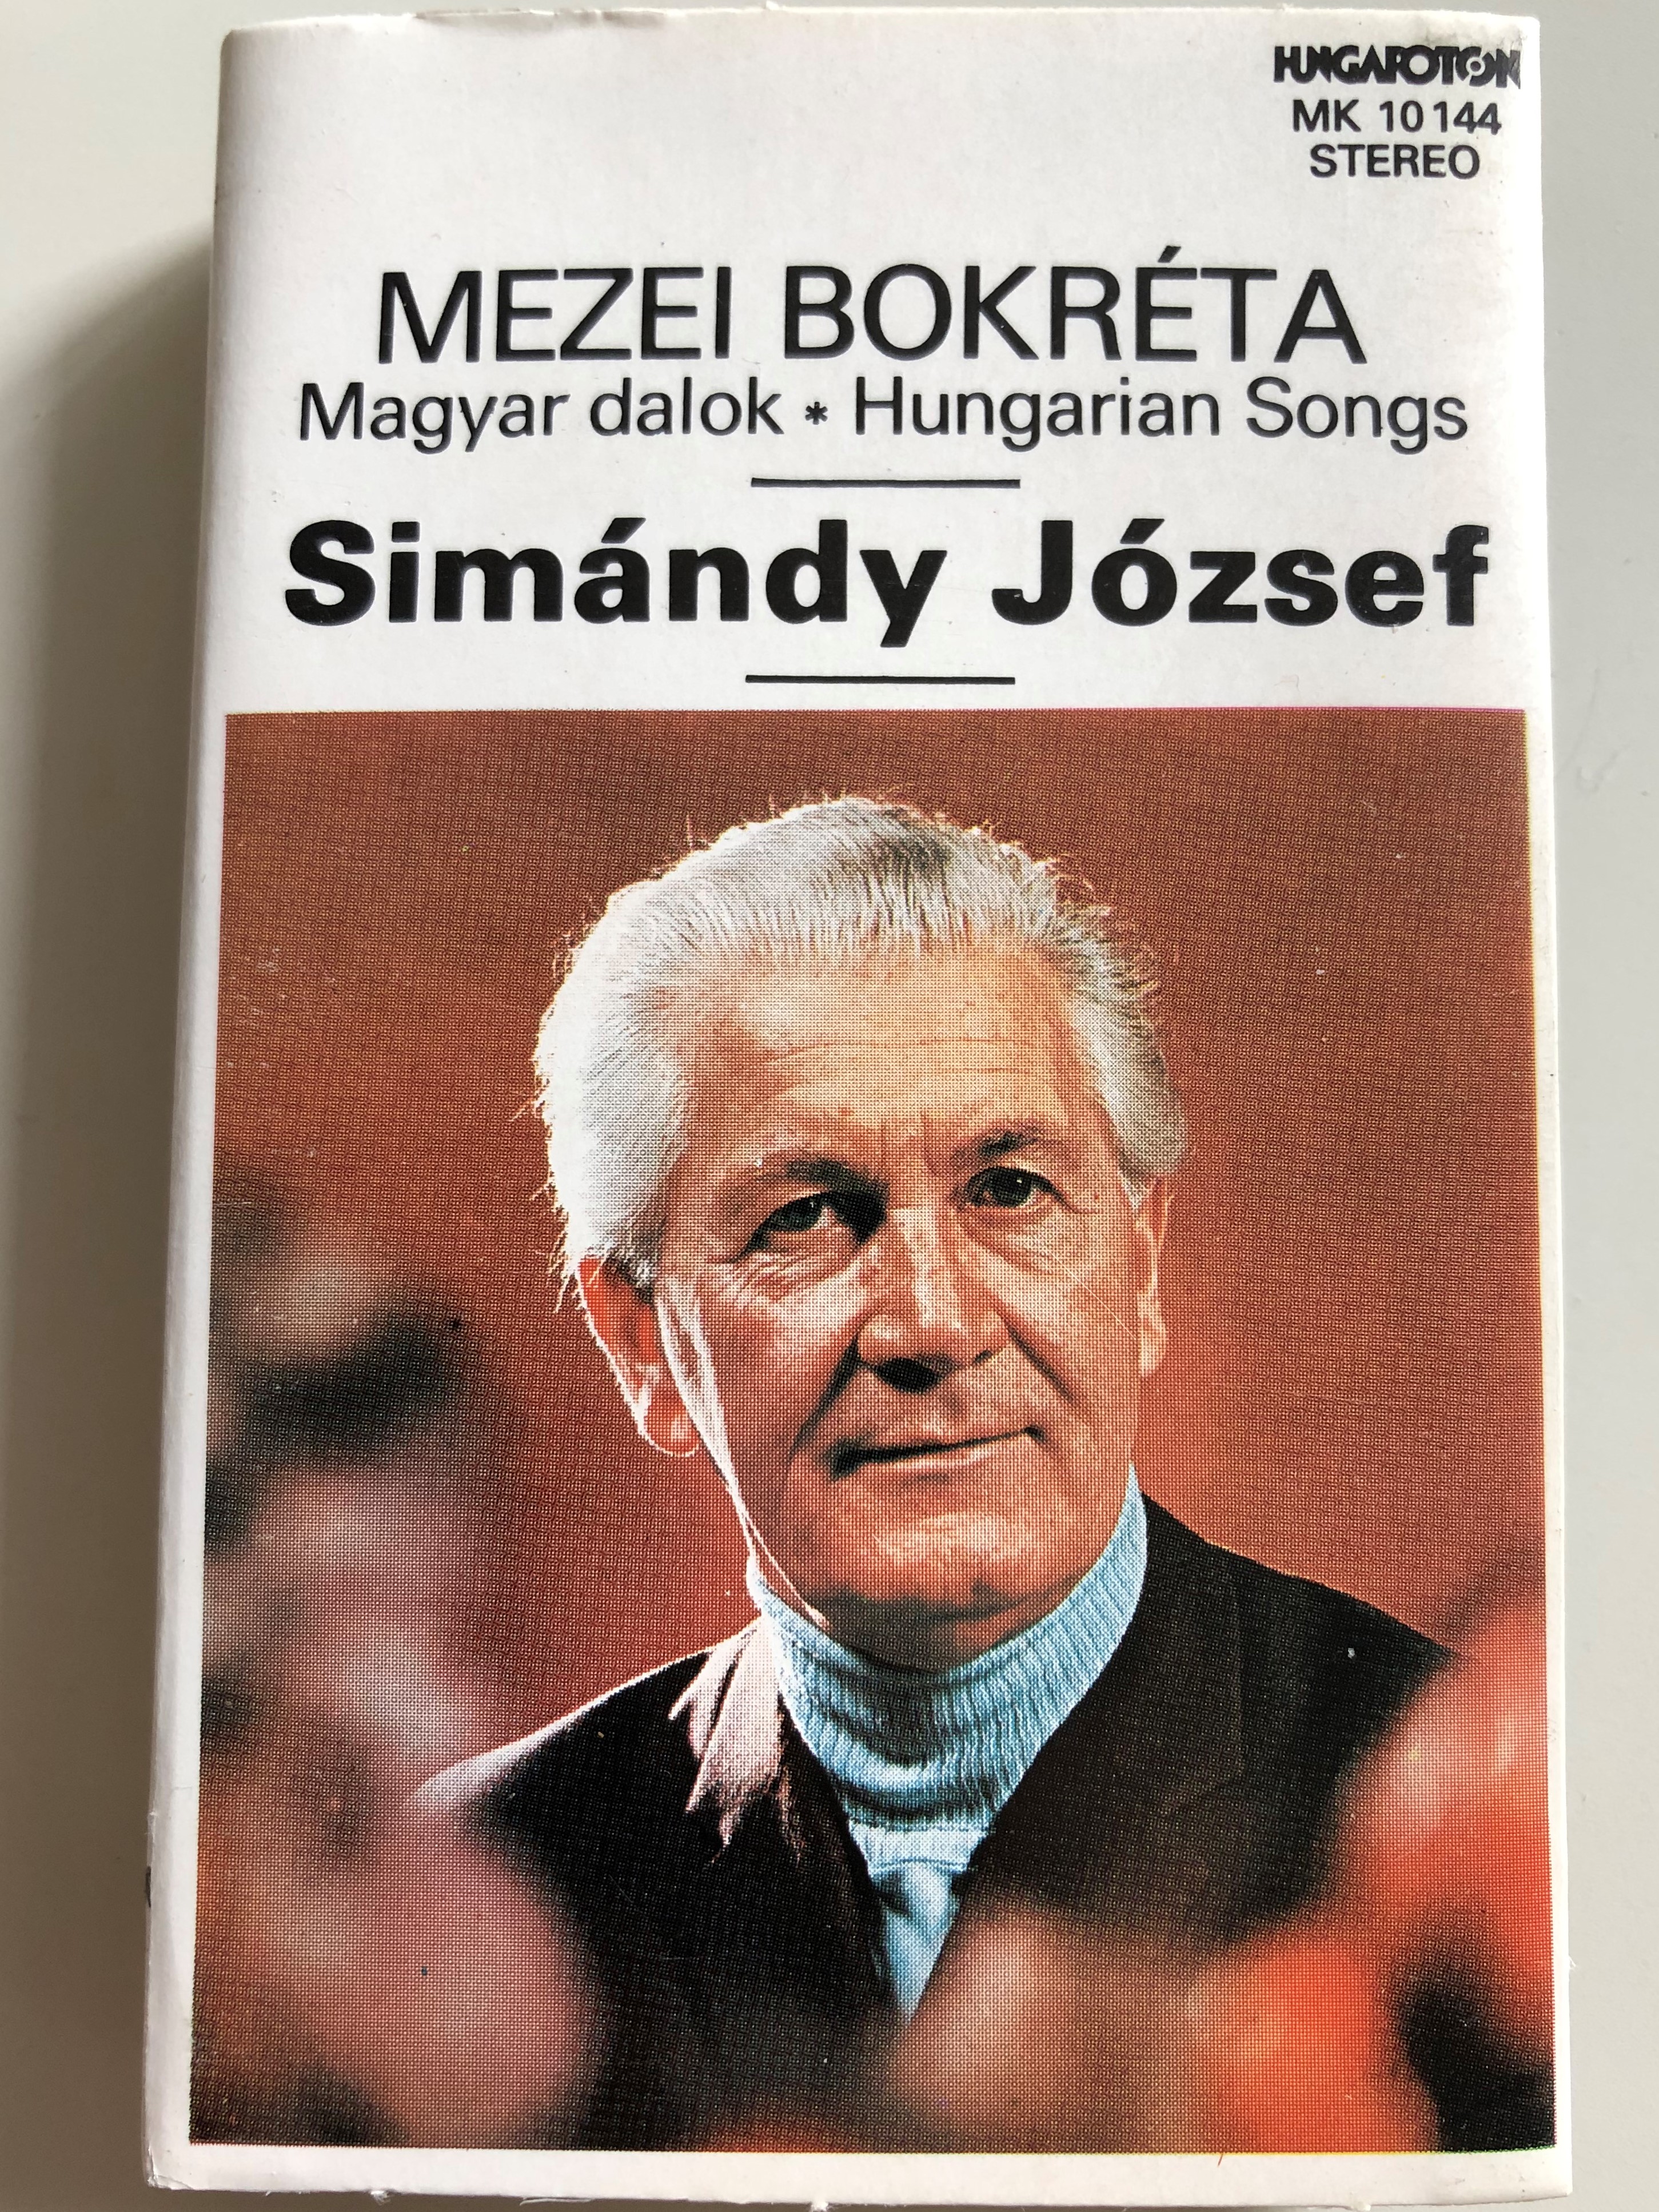 mezei-bokr-ta-magyar-dalok-hungarian-songs-sim-ndy-j-zsef-hungaroton-cassette-stereo-mk-10144-1-.jpg